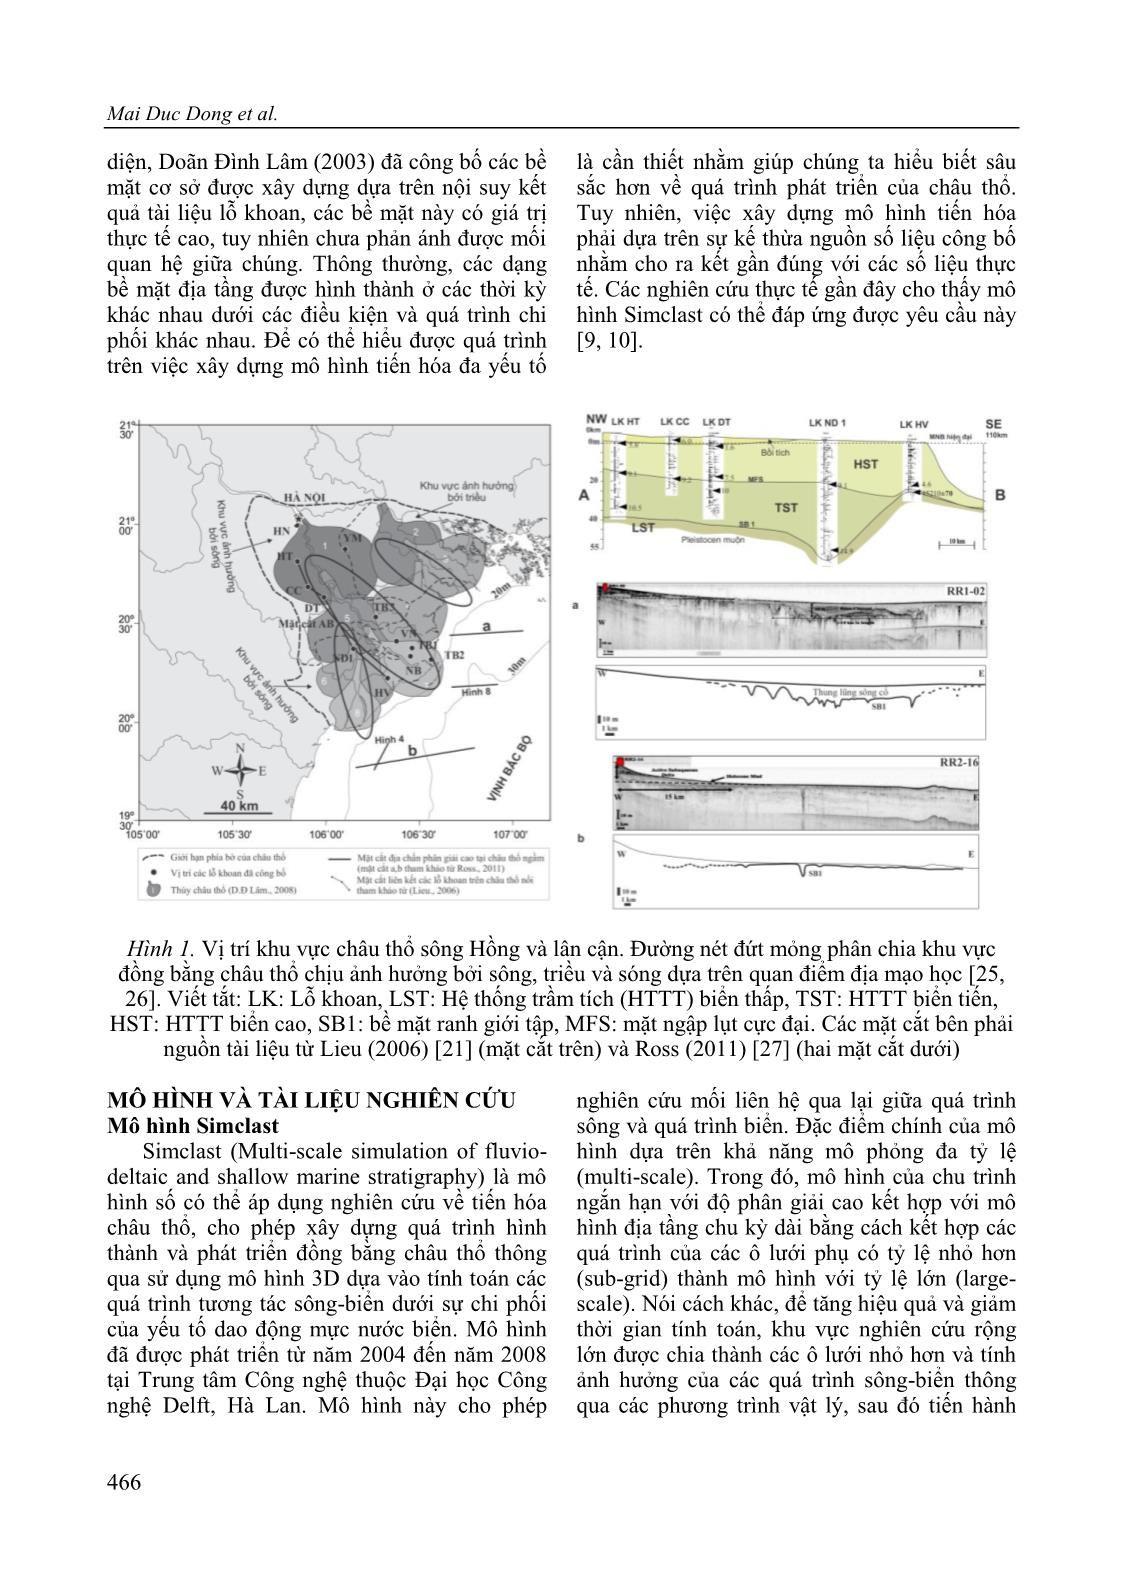 Ứng dụng mô hình số Simclast nghiên cứu sự phát triển của châu thổ sông Hồng giai đoạn Pleistocen muộn-Holocen trang 4